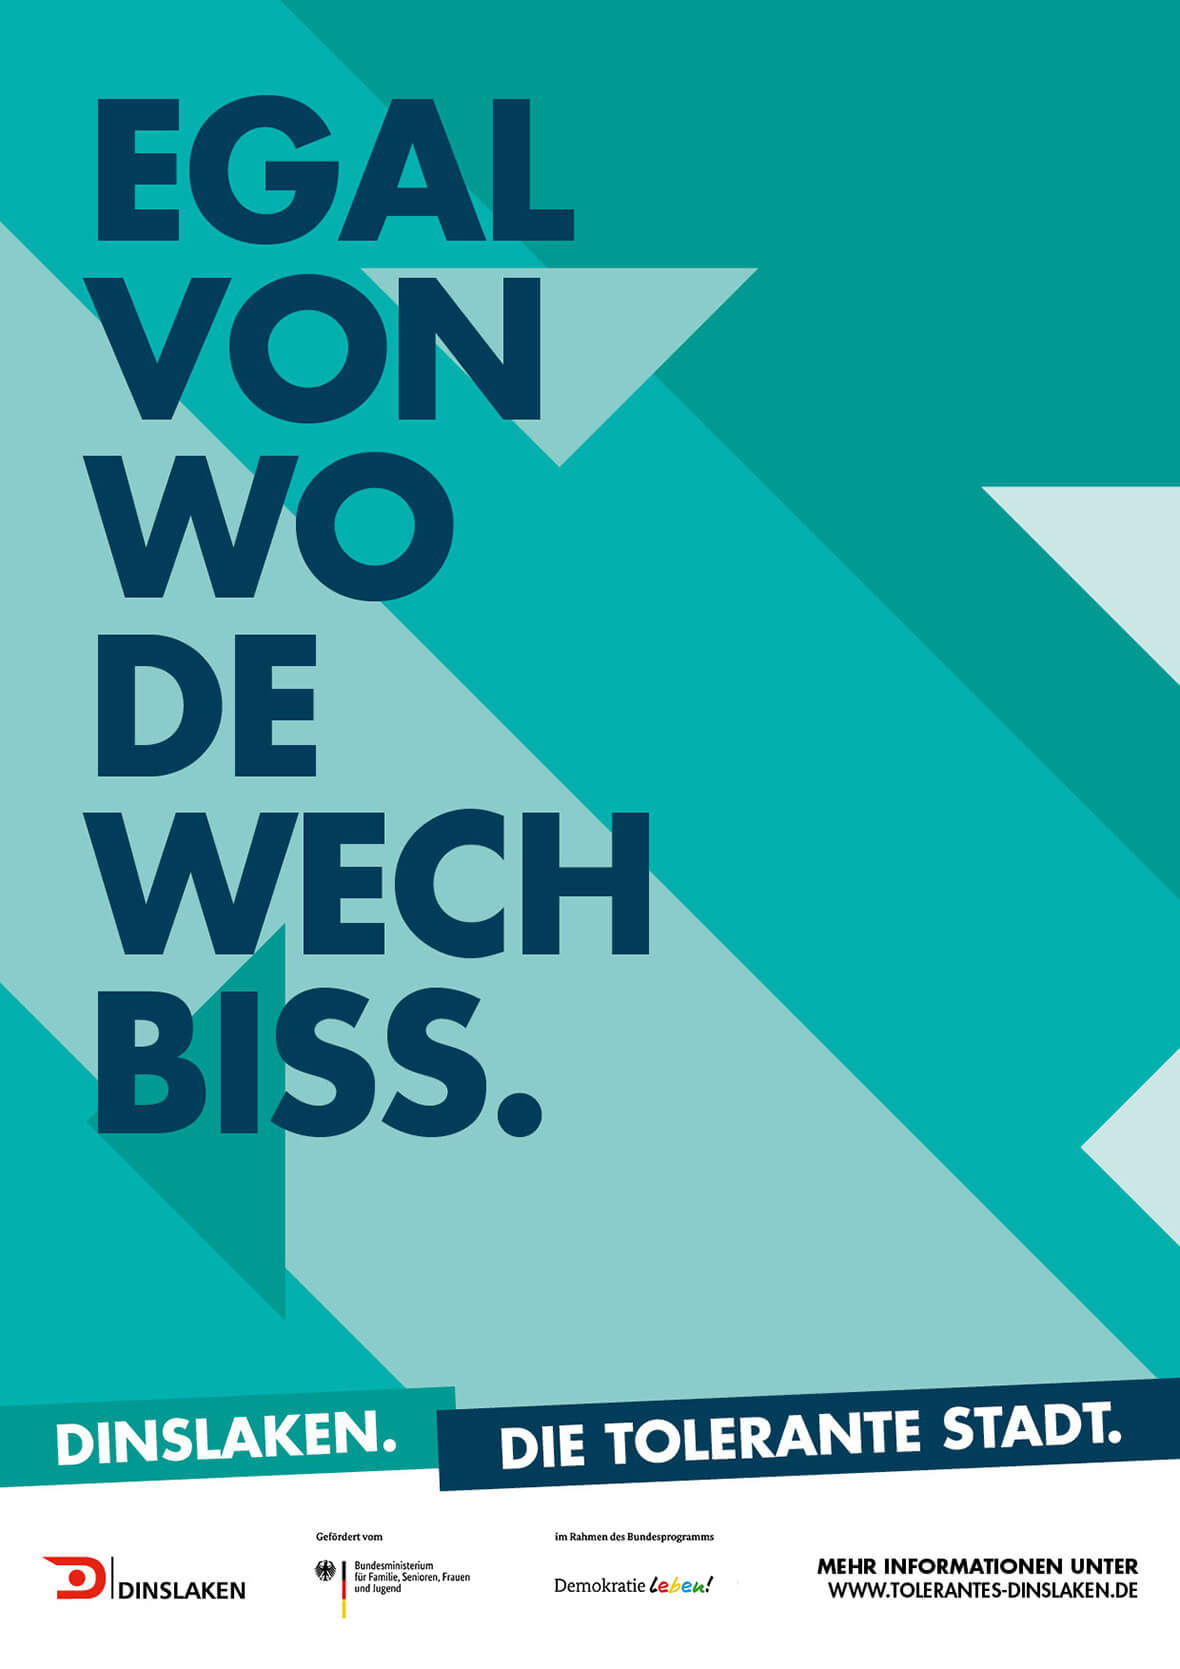 Tolerantes Dinslaken - Plakat zur Kampagne - Egal von wo de wech bis